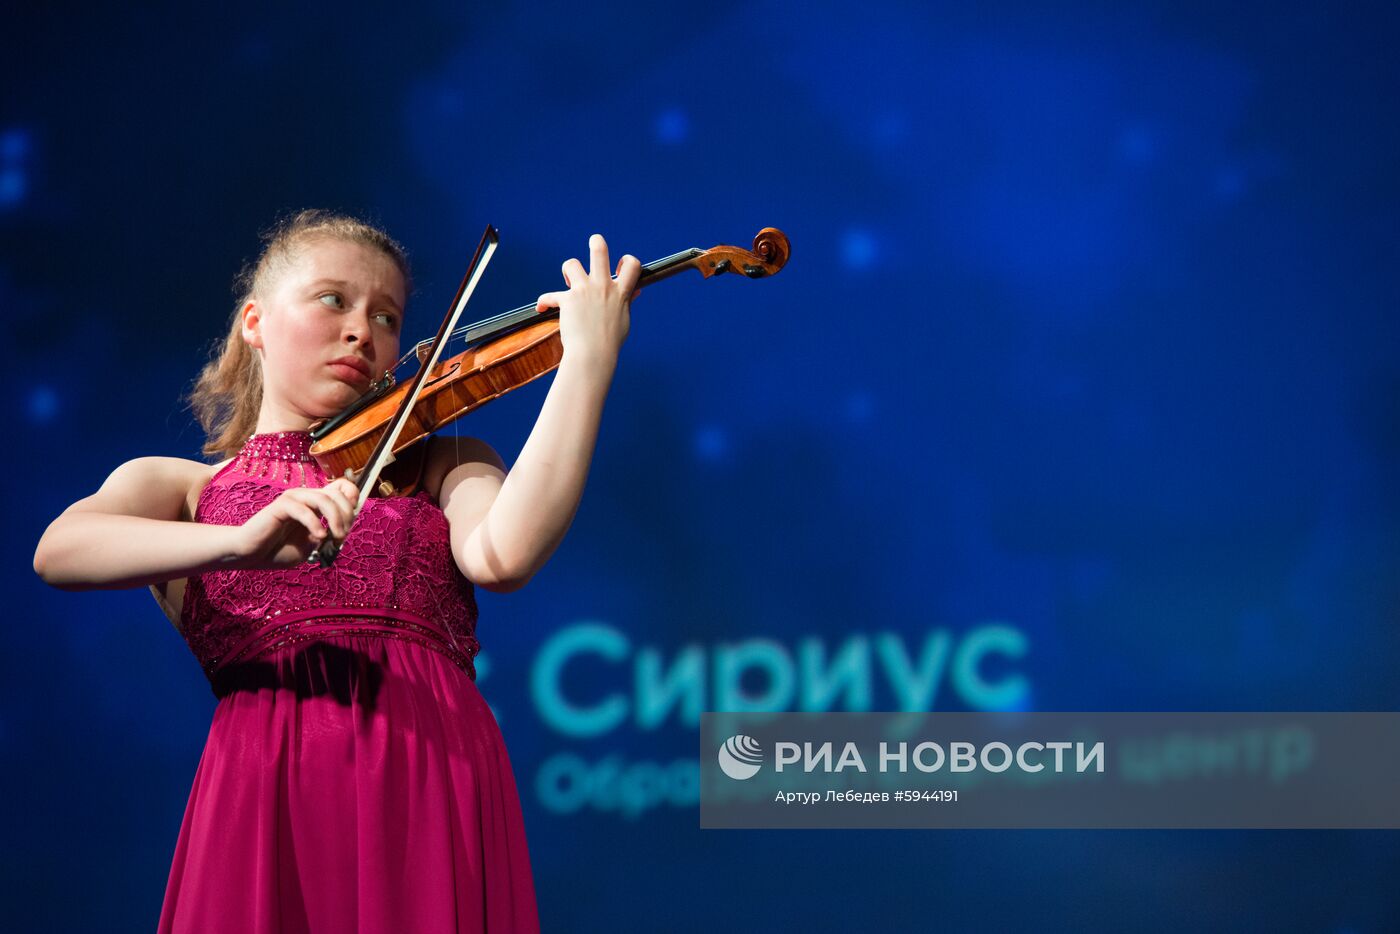 Всероссийский конкурс молодых музыкантов "Созвездие"